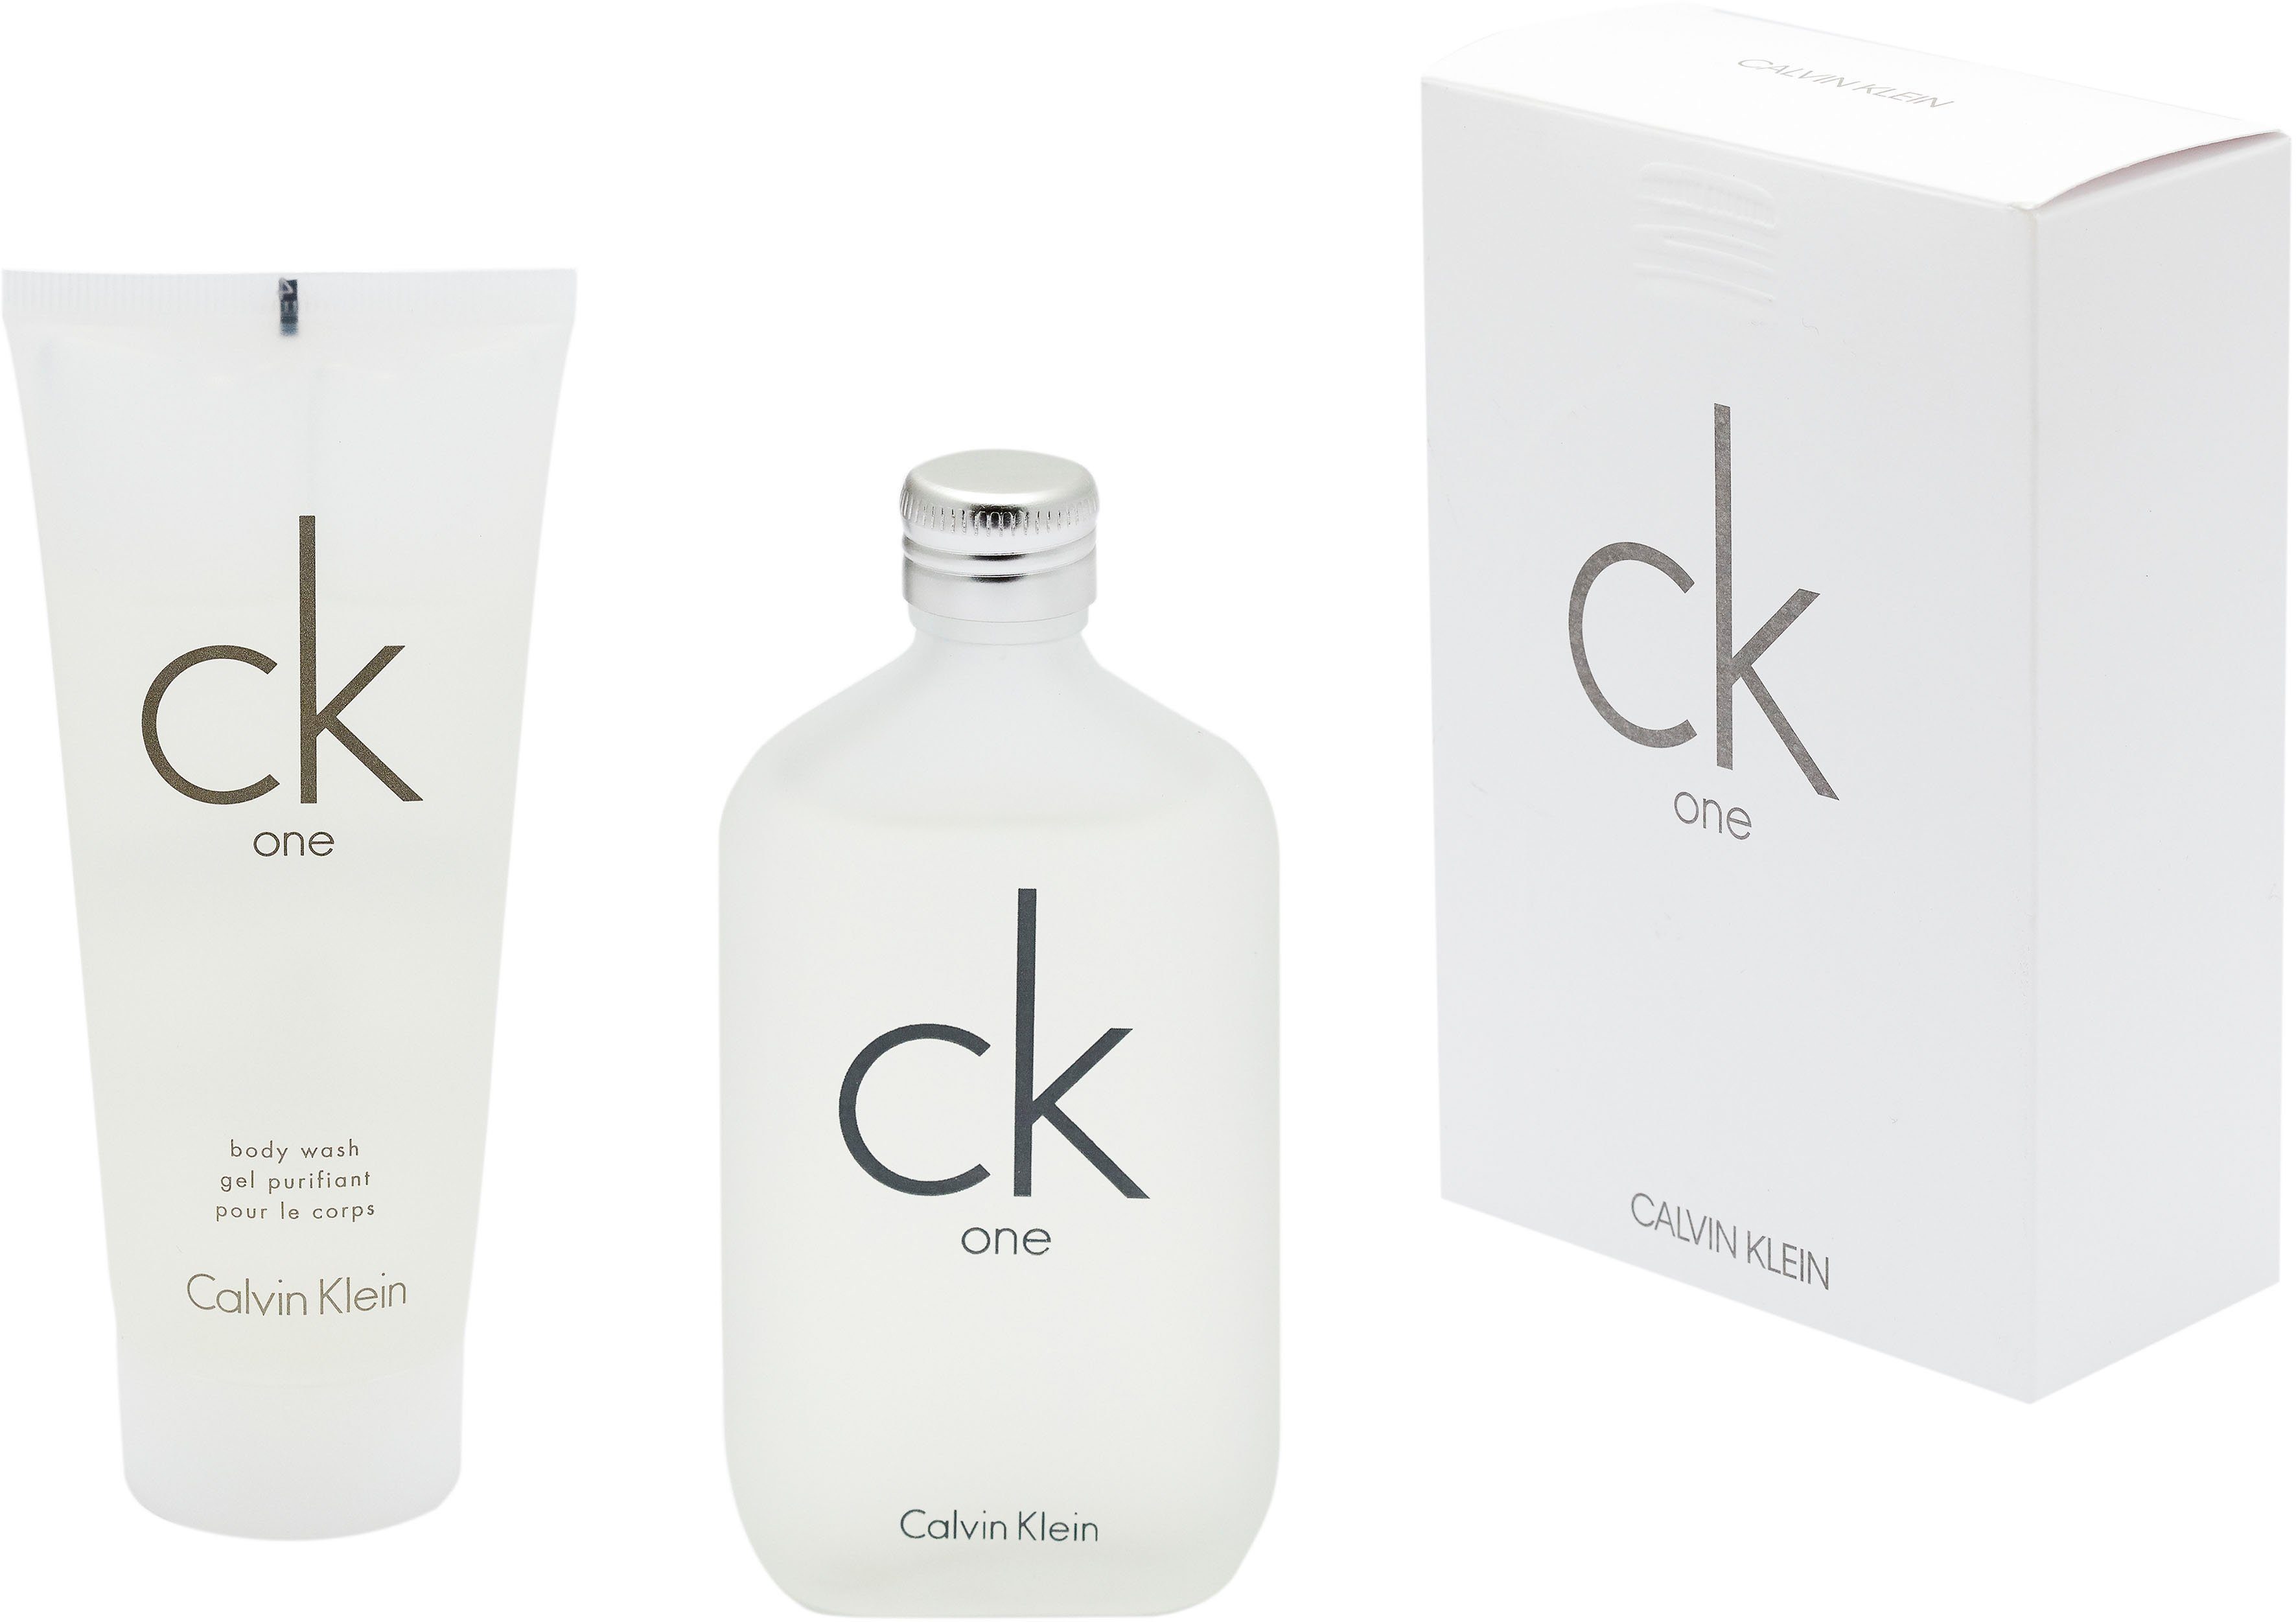 Calvin Klein Duft-Set ck one, 2-tlg.